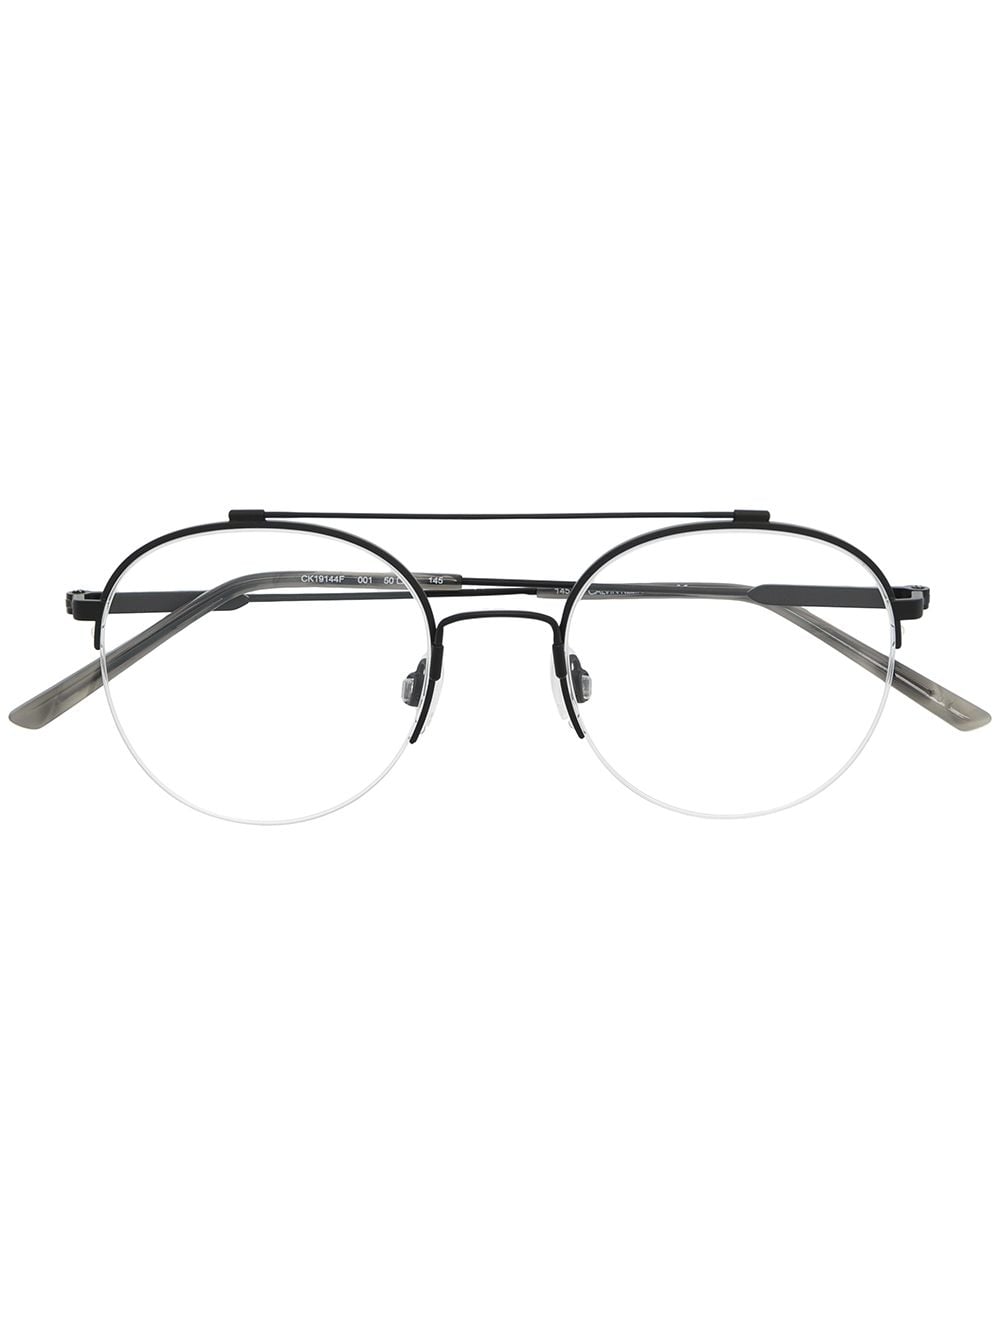 Calvin Klein CK19144 round-frame glasses - Black von Calvin Klein